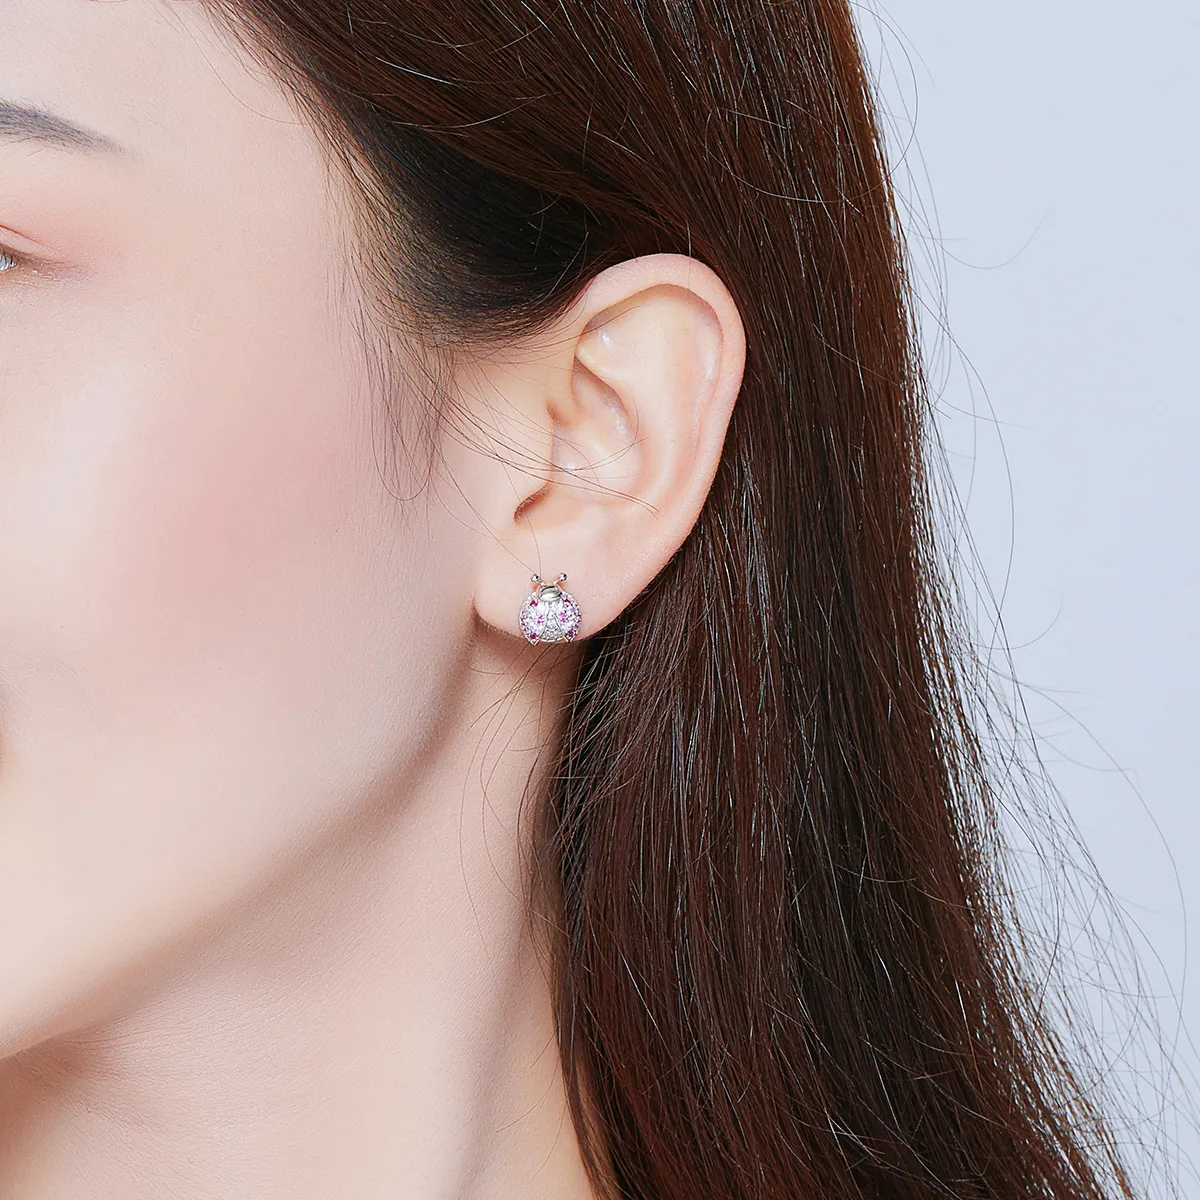 Pandora Style Silver Ladybug Stud Earrings - SCE715